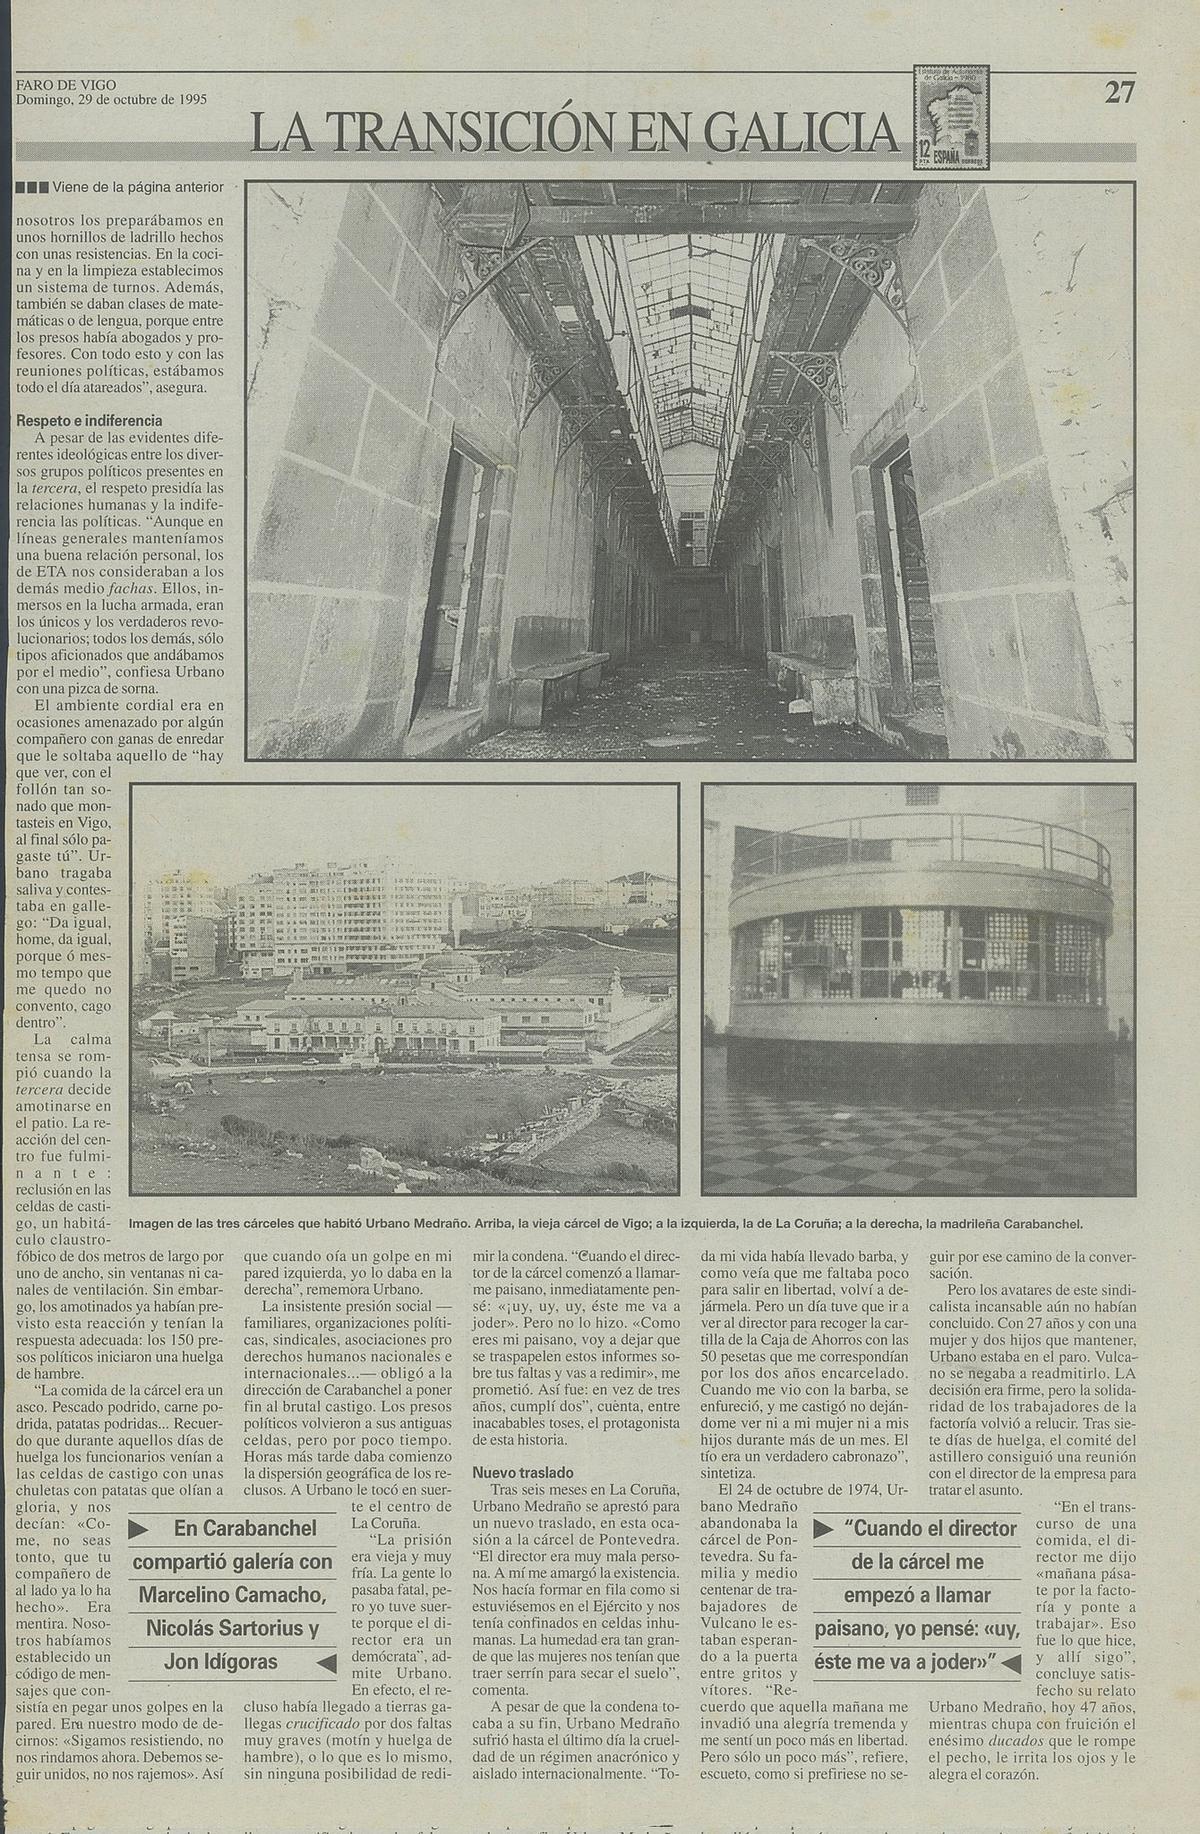 Segunda parte de la doble página del artículo sobre Urbano Medraño publicado en 1995 en Faro de Vigo.